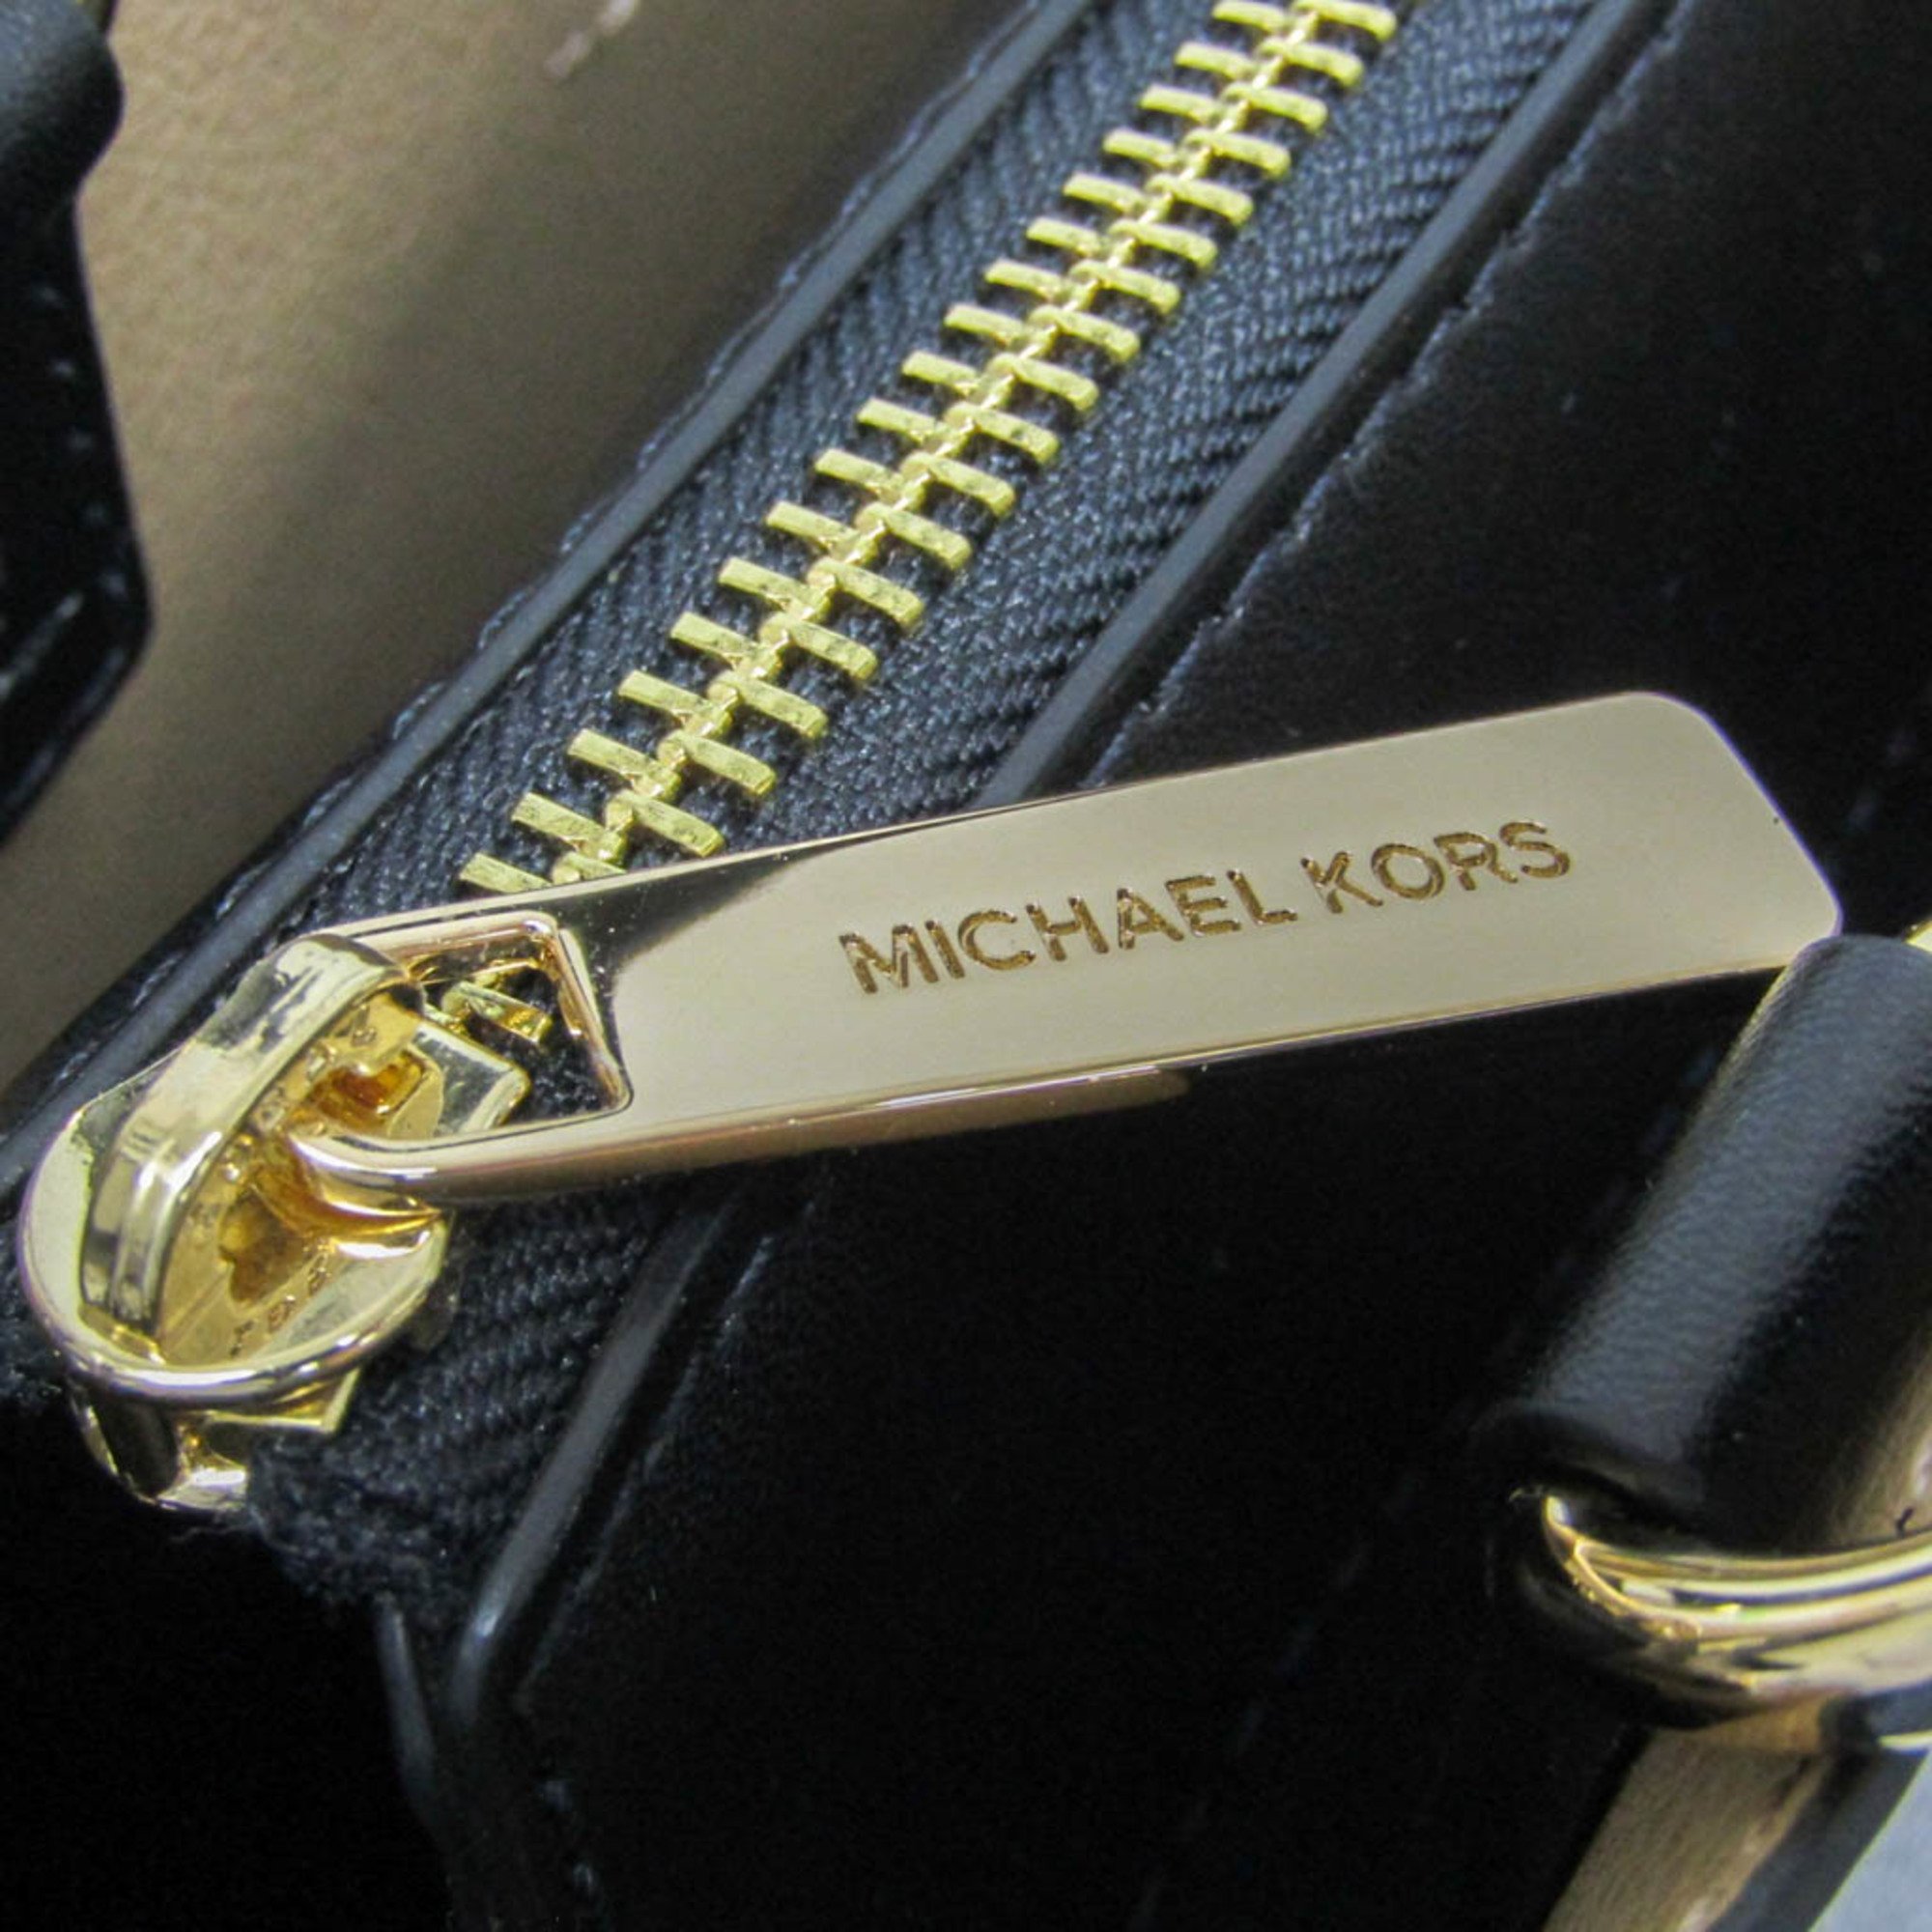 Michael Kors Reed Small Center Zip Belted Satchel 35S3G6RS1T Women's Leather Handbag,Shoulder Bag Black